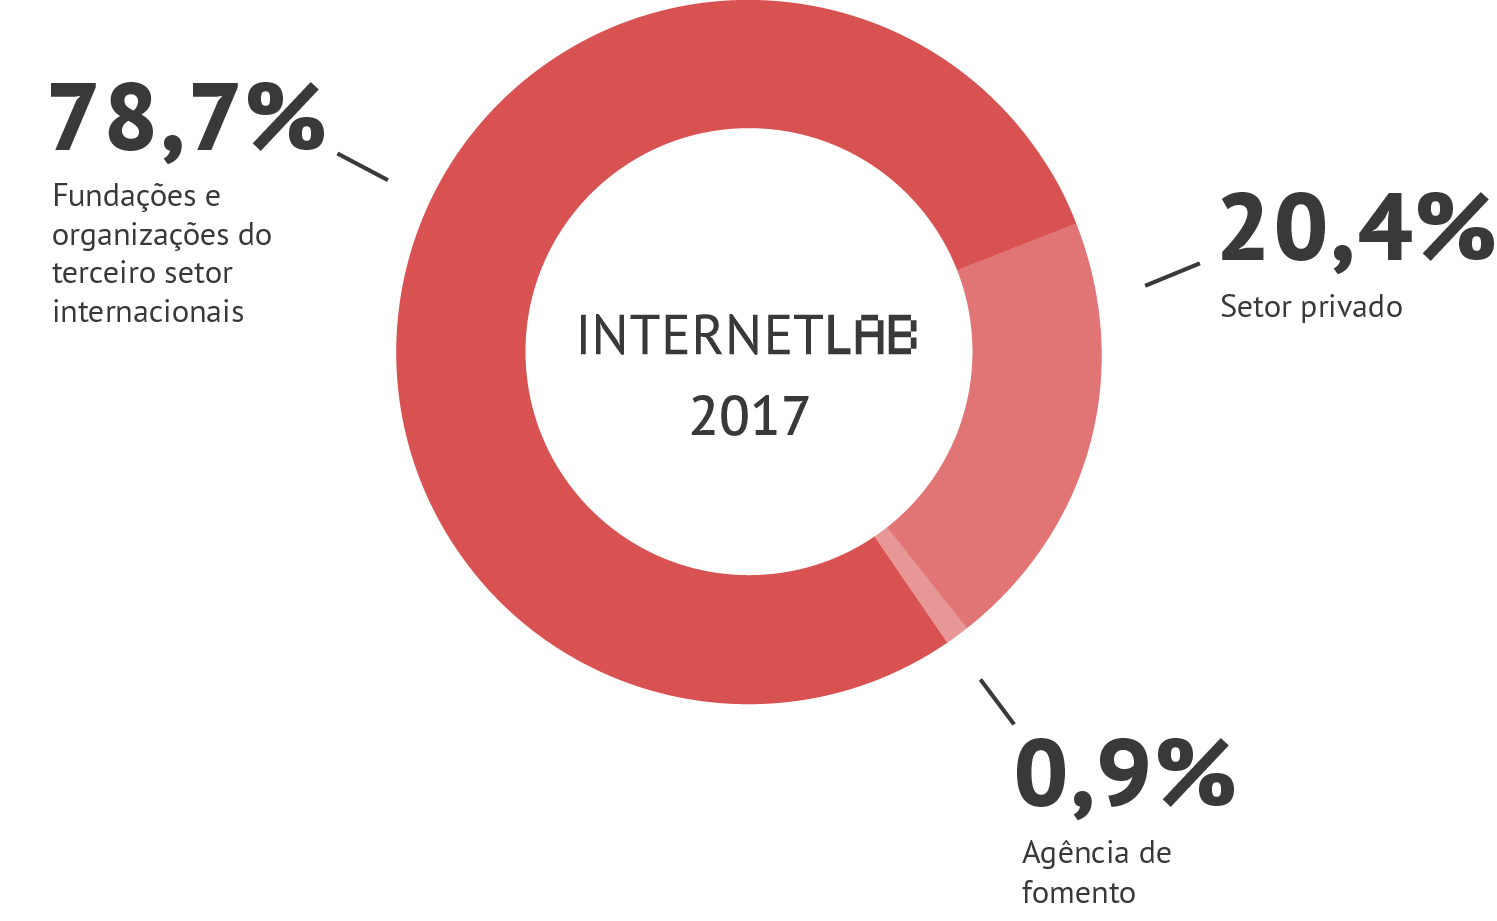 Gráfico em pizza com as informações de fontes de financiamento do InternetLab em 2017. Sendo 78,7% vindo de fundações e organizações do terceiro setor internacionais, 20,4% do setor privado e 0,9% de pessoas físicas.